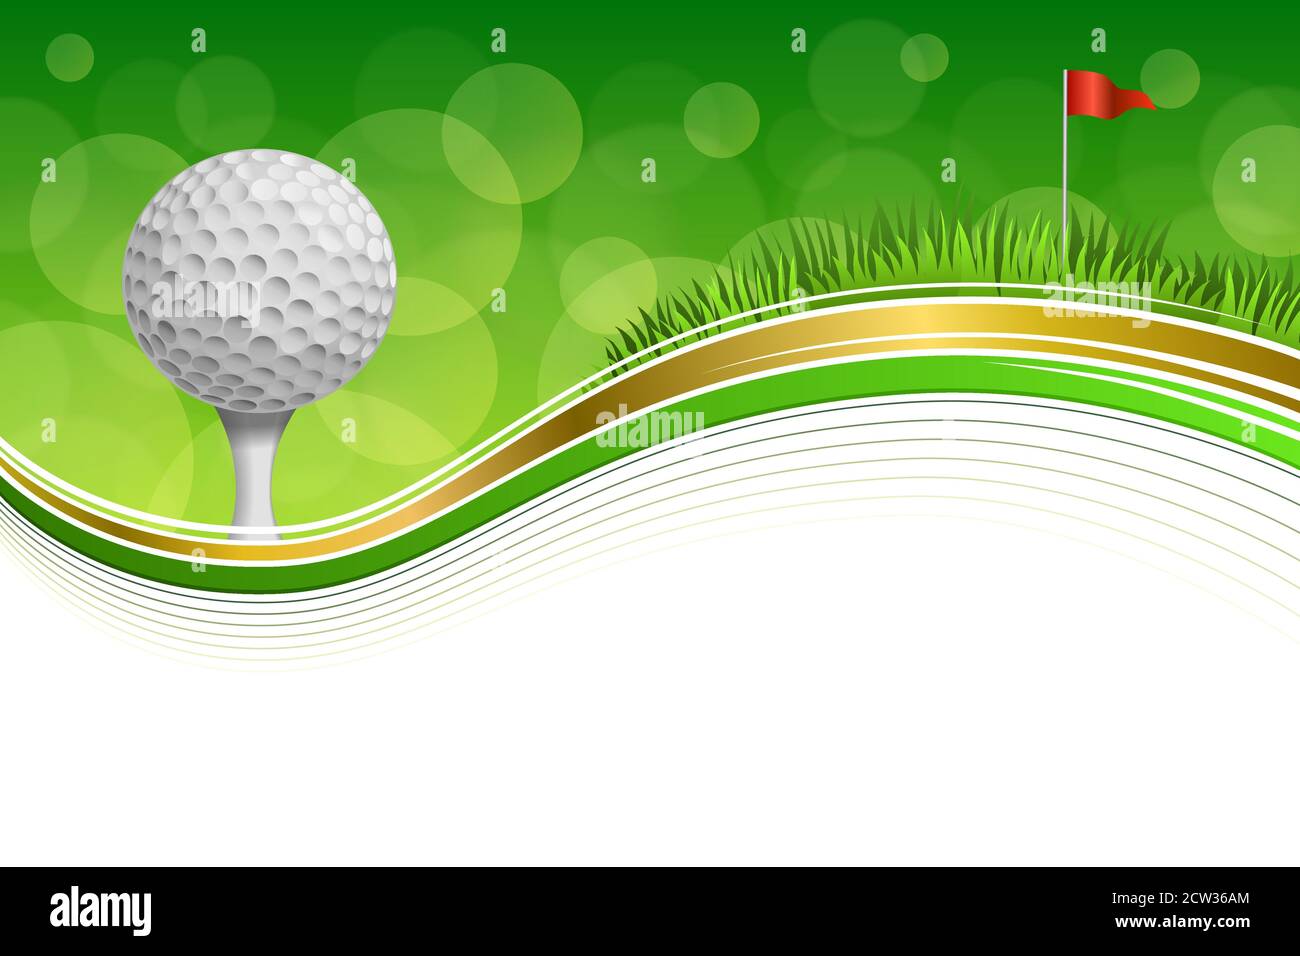 Hintergrund abstrakt Golf Sport grünes Gras rote Flagge weiße Kugel Vektorgrafik für goldene Rahmen Stock Vektor